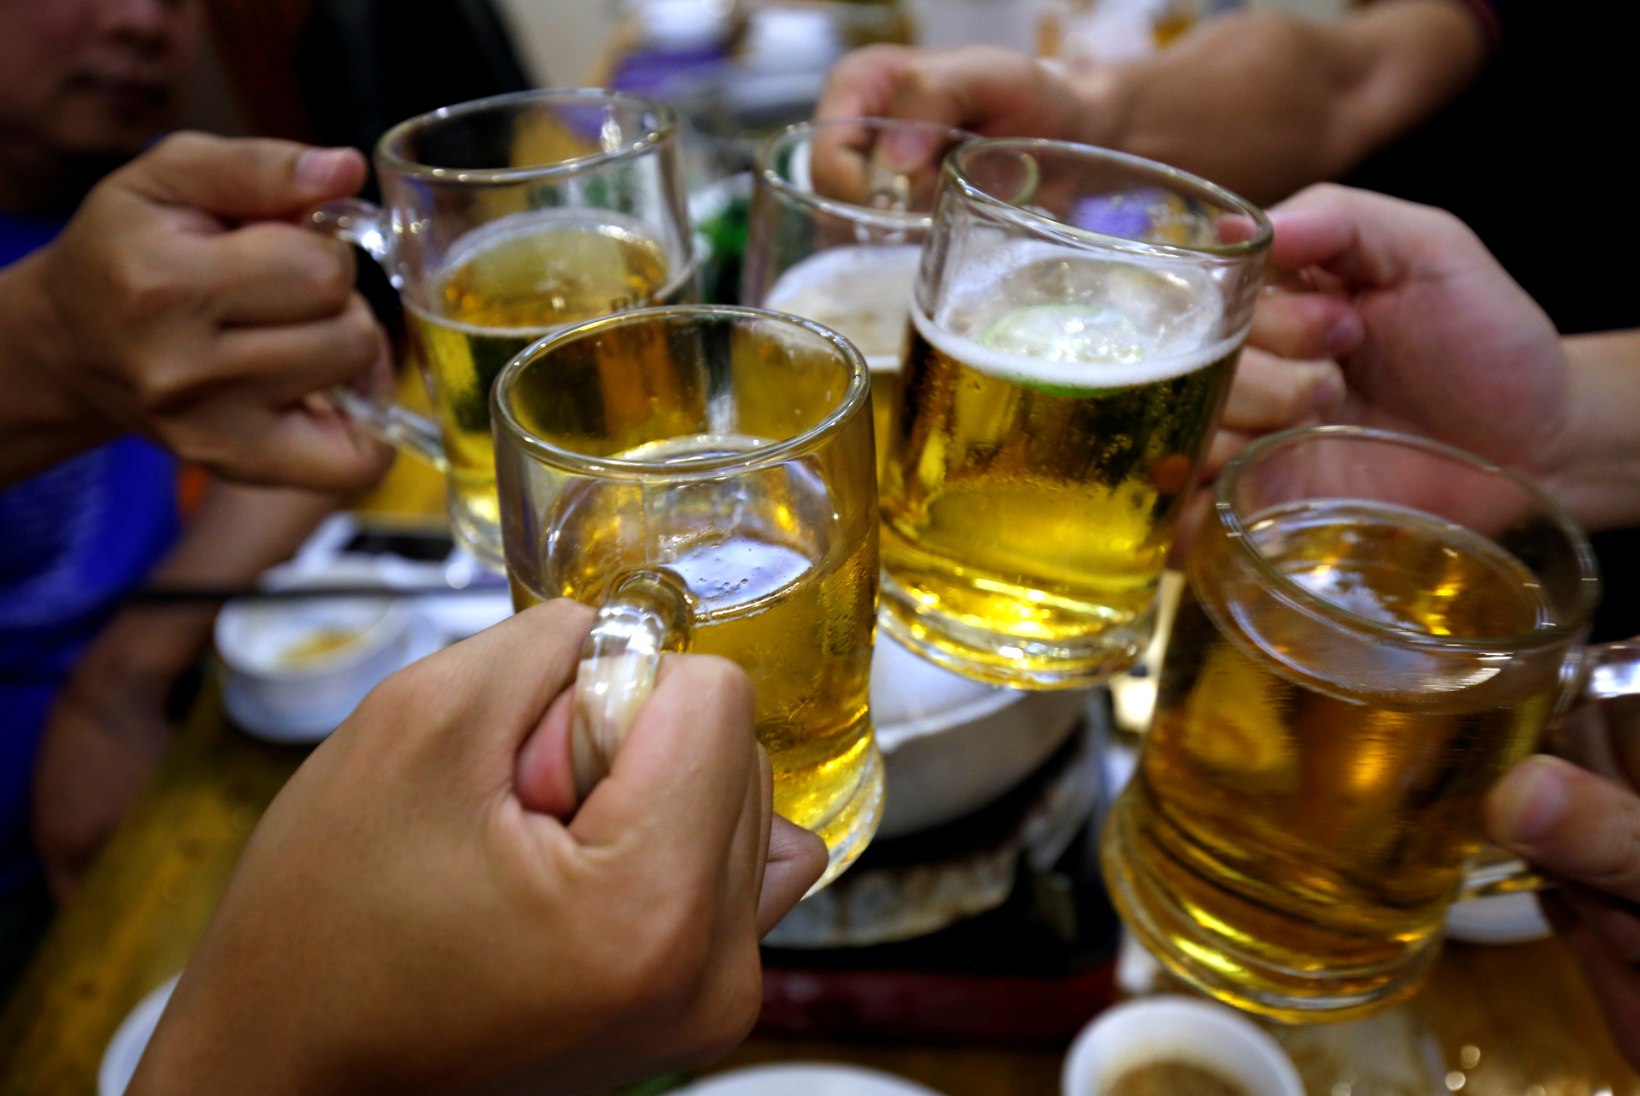 Venemaa hokimeeste tuules: paljudes Eesti koondistes on alkoholi suhtes nulltolerants